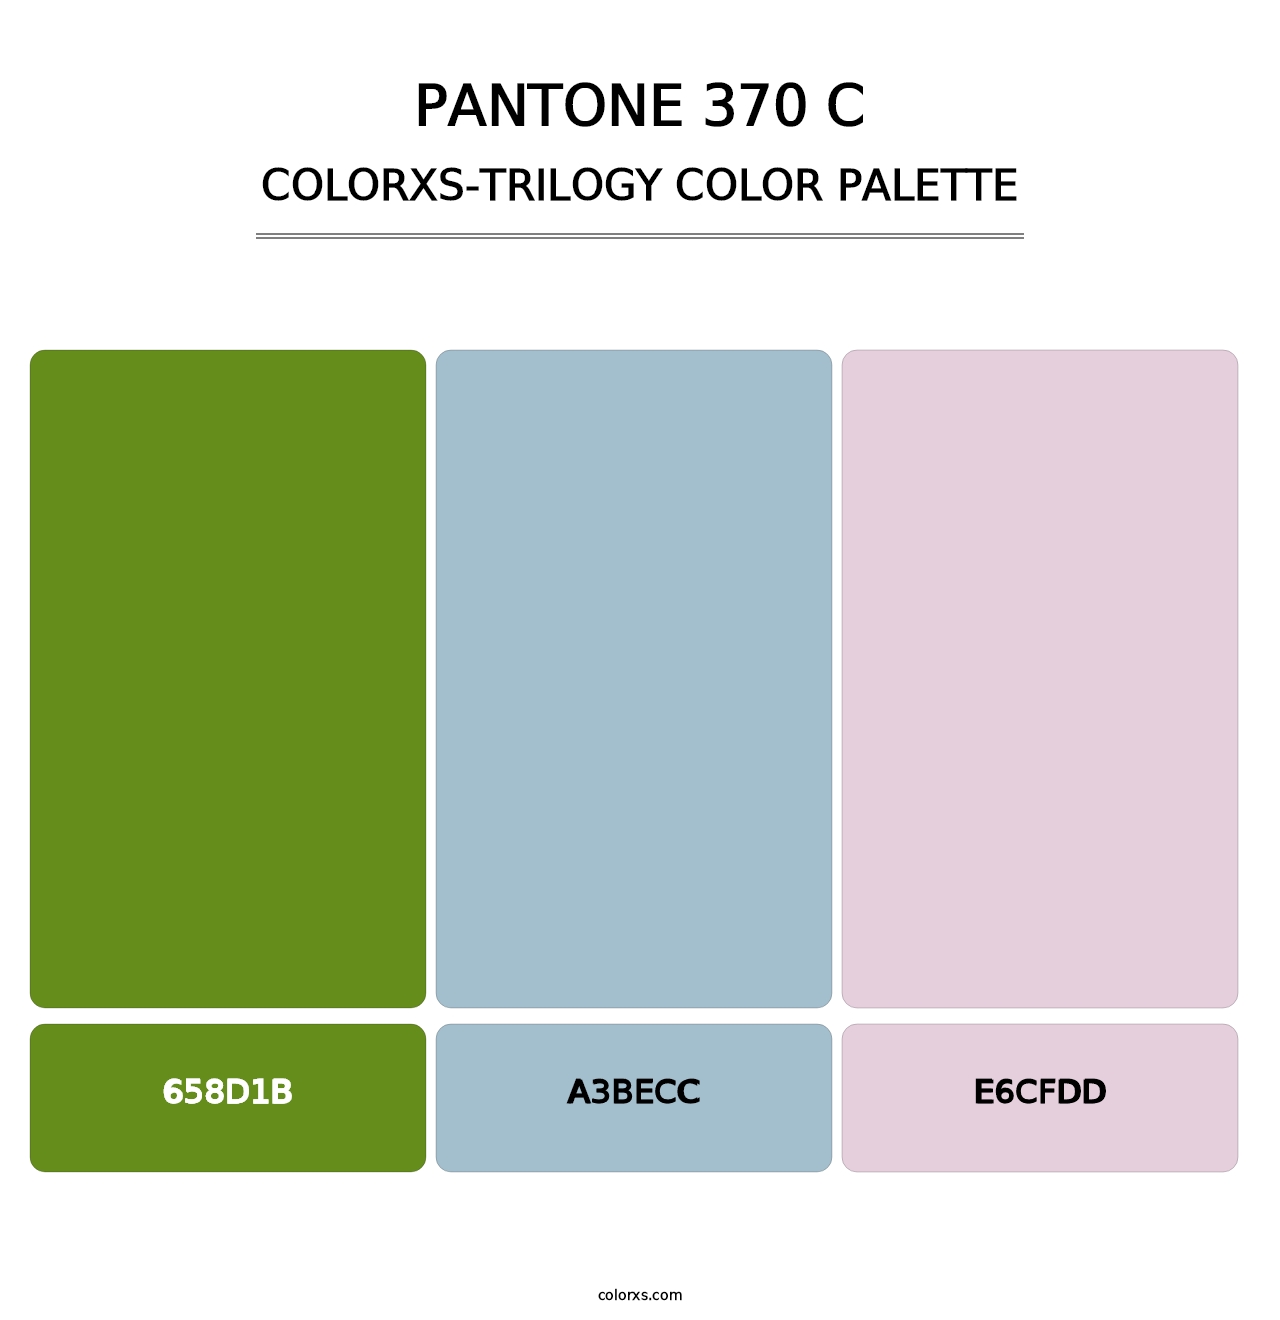 PANTONE 370 C - Colorxs Trilogy Palette